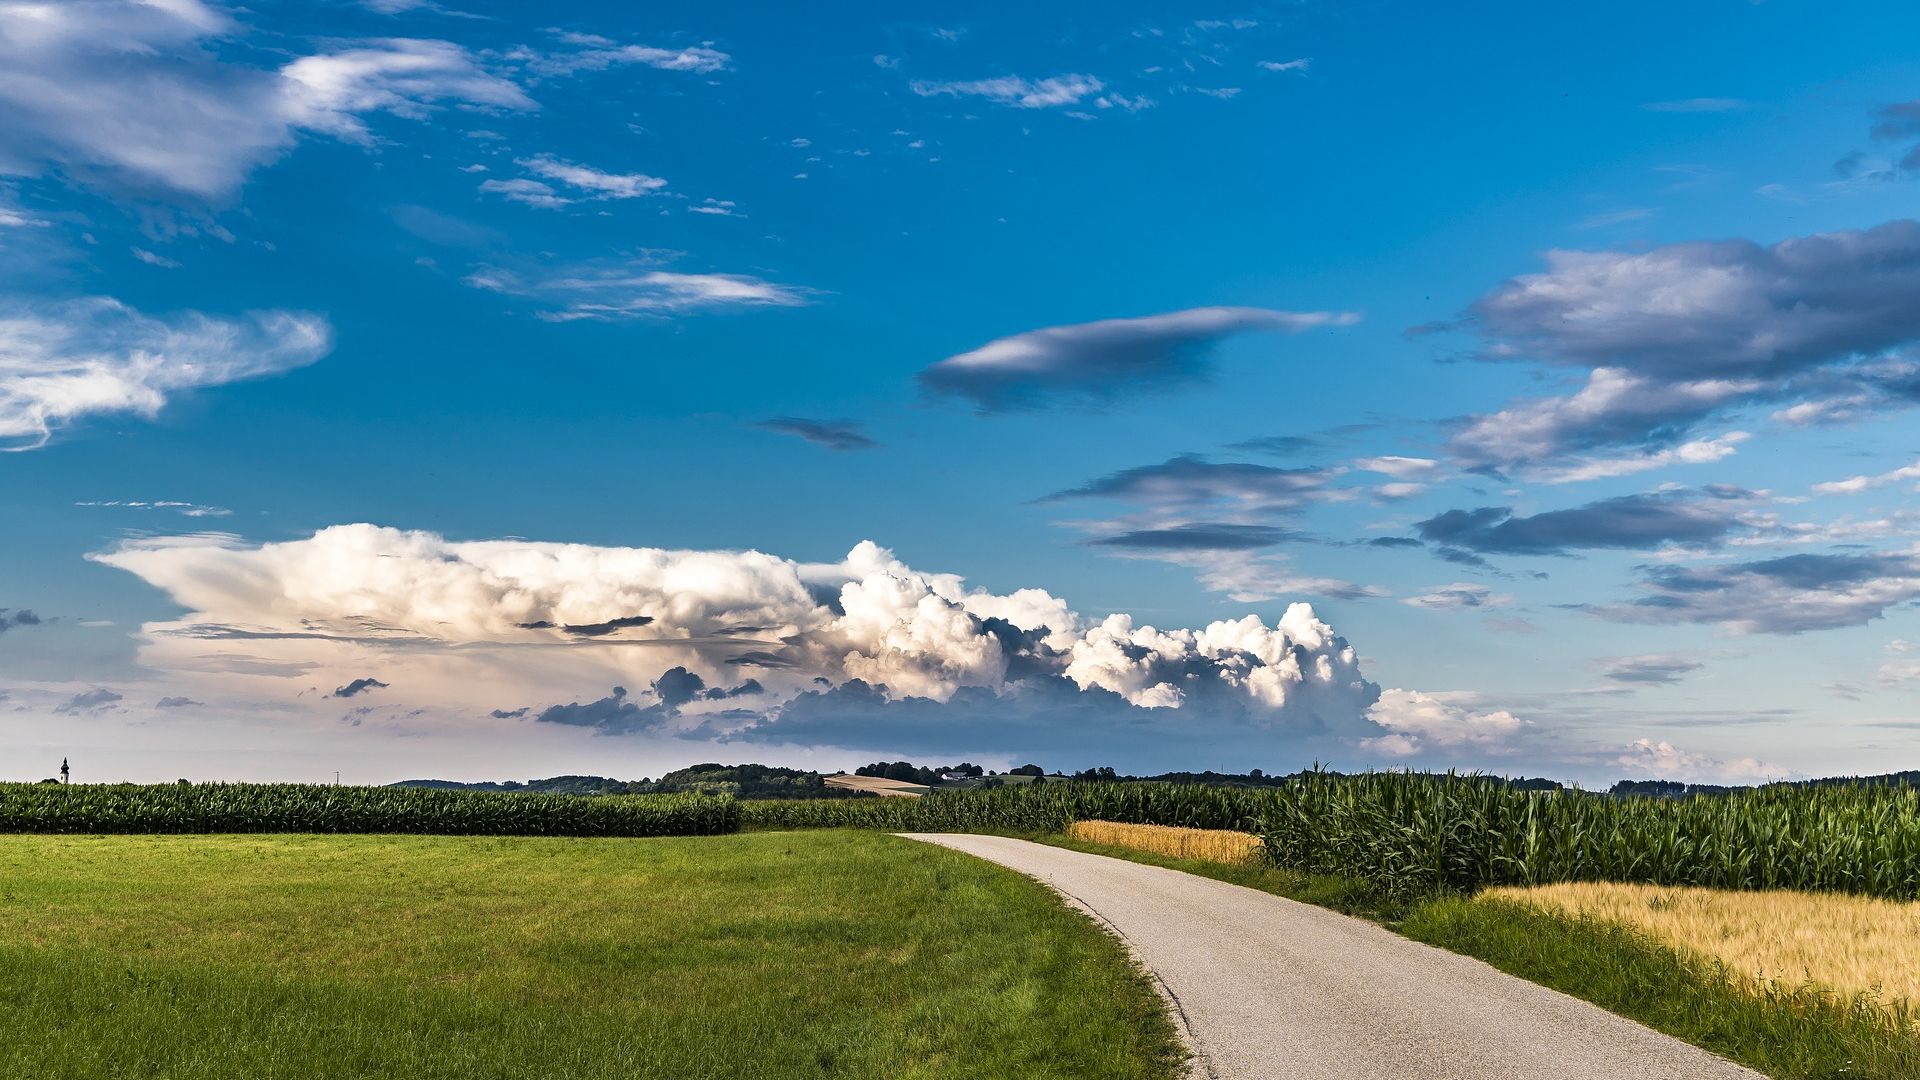 Desktop Wallpaper Road, Landscape, Farm, Clouds, Blue Sky, Hd Image,  Picture, Background, 34120c